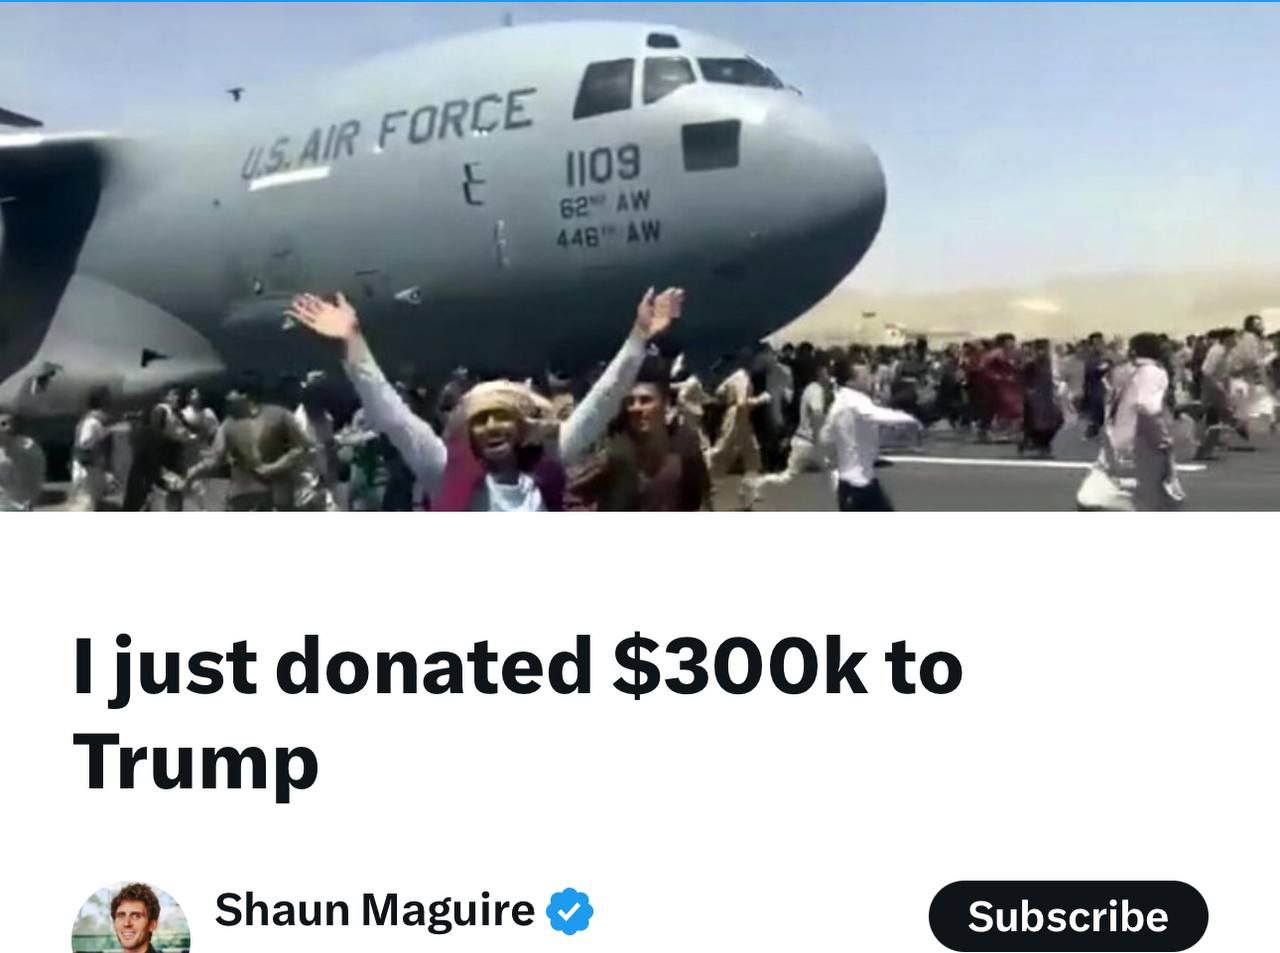 На скрине венчурный капиталист Шон Магуайр объявляет, что он только что пожертвовал Трампу 300 000 долларов после приговора